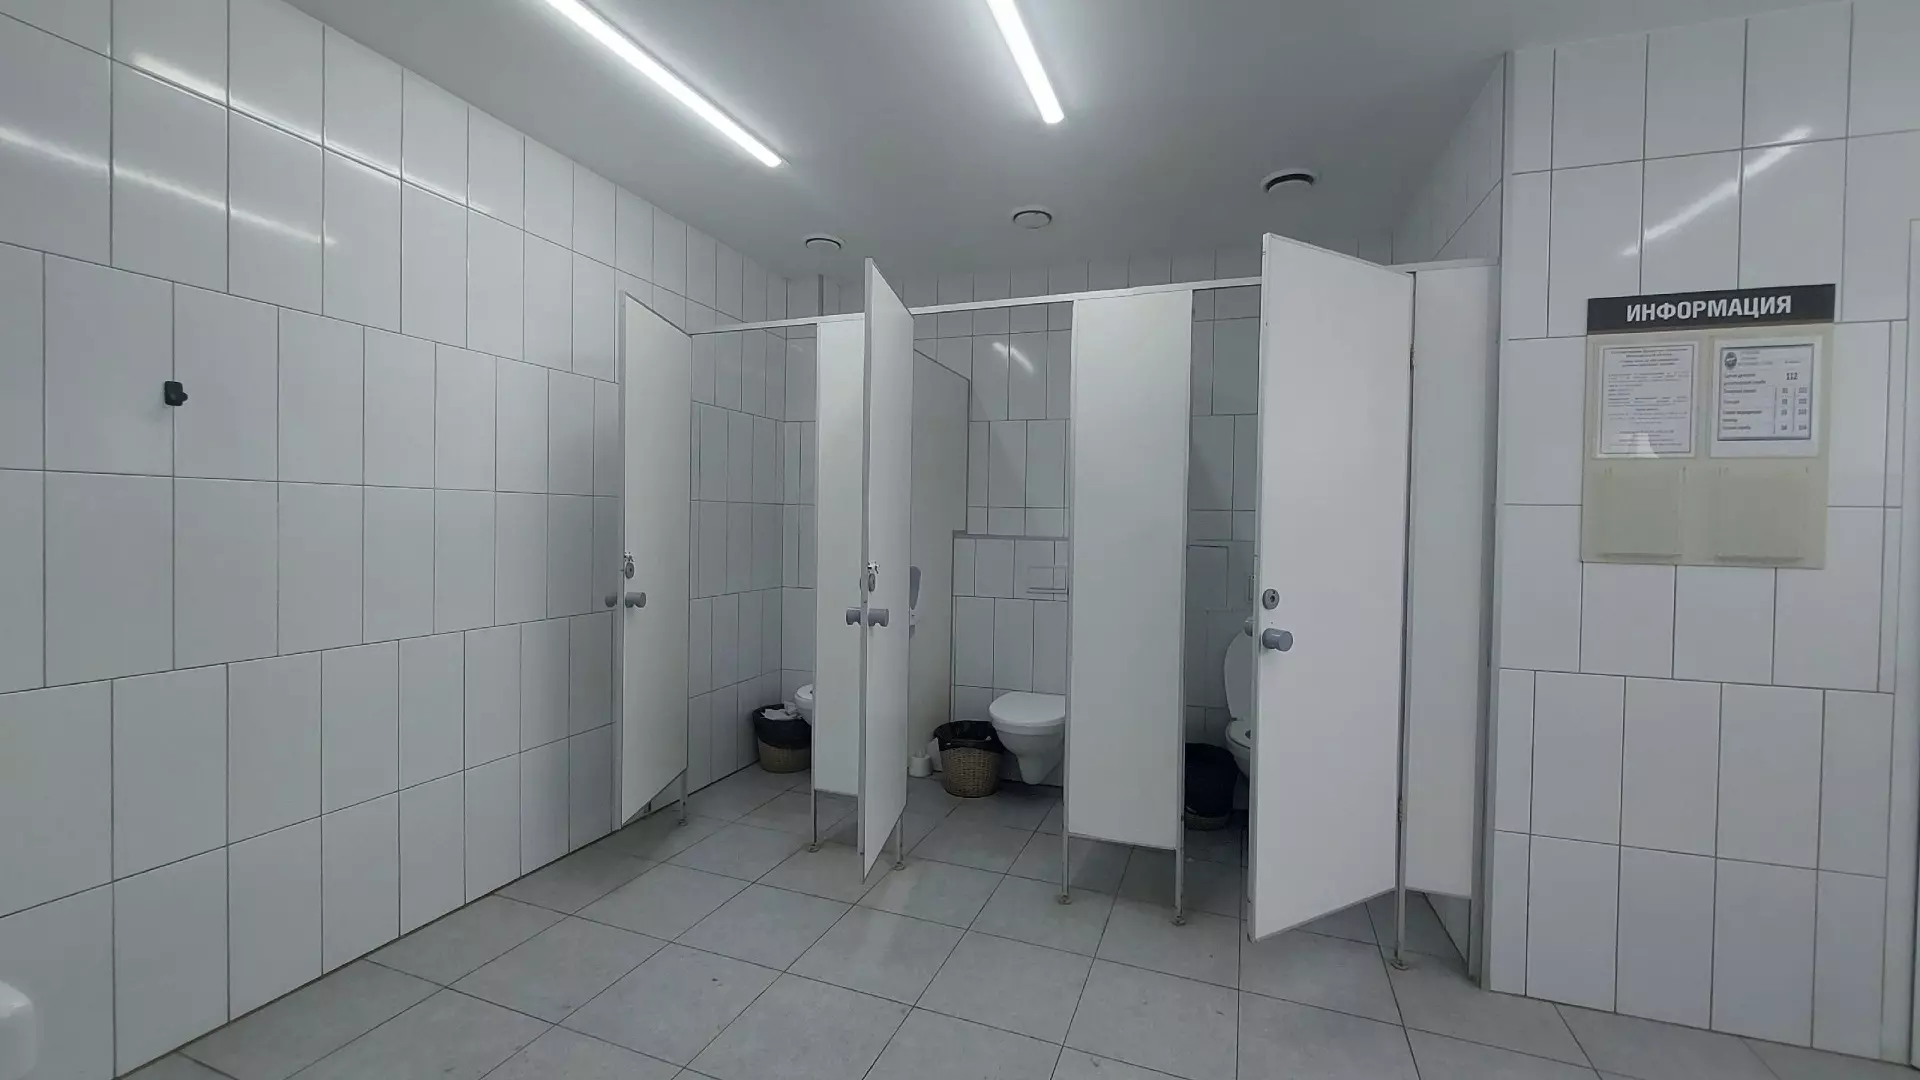 Пять общественных туалетов не работают в Нижнем Новгороде